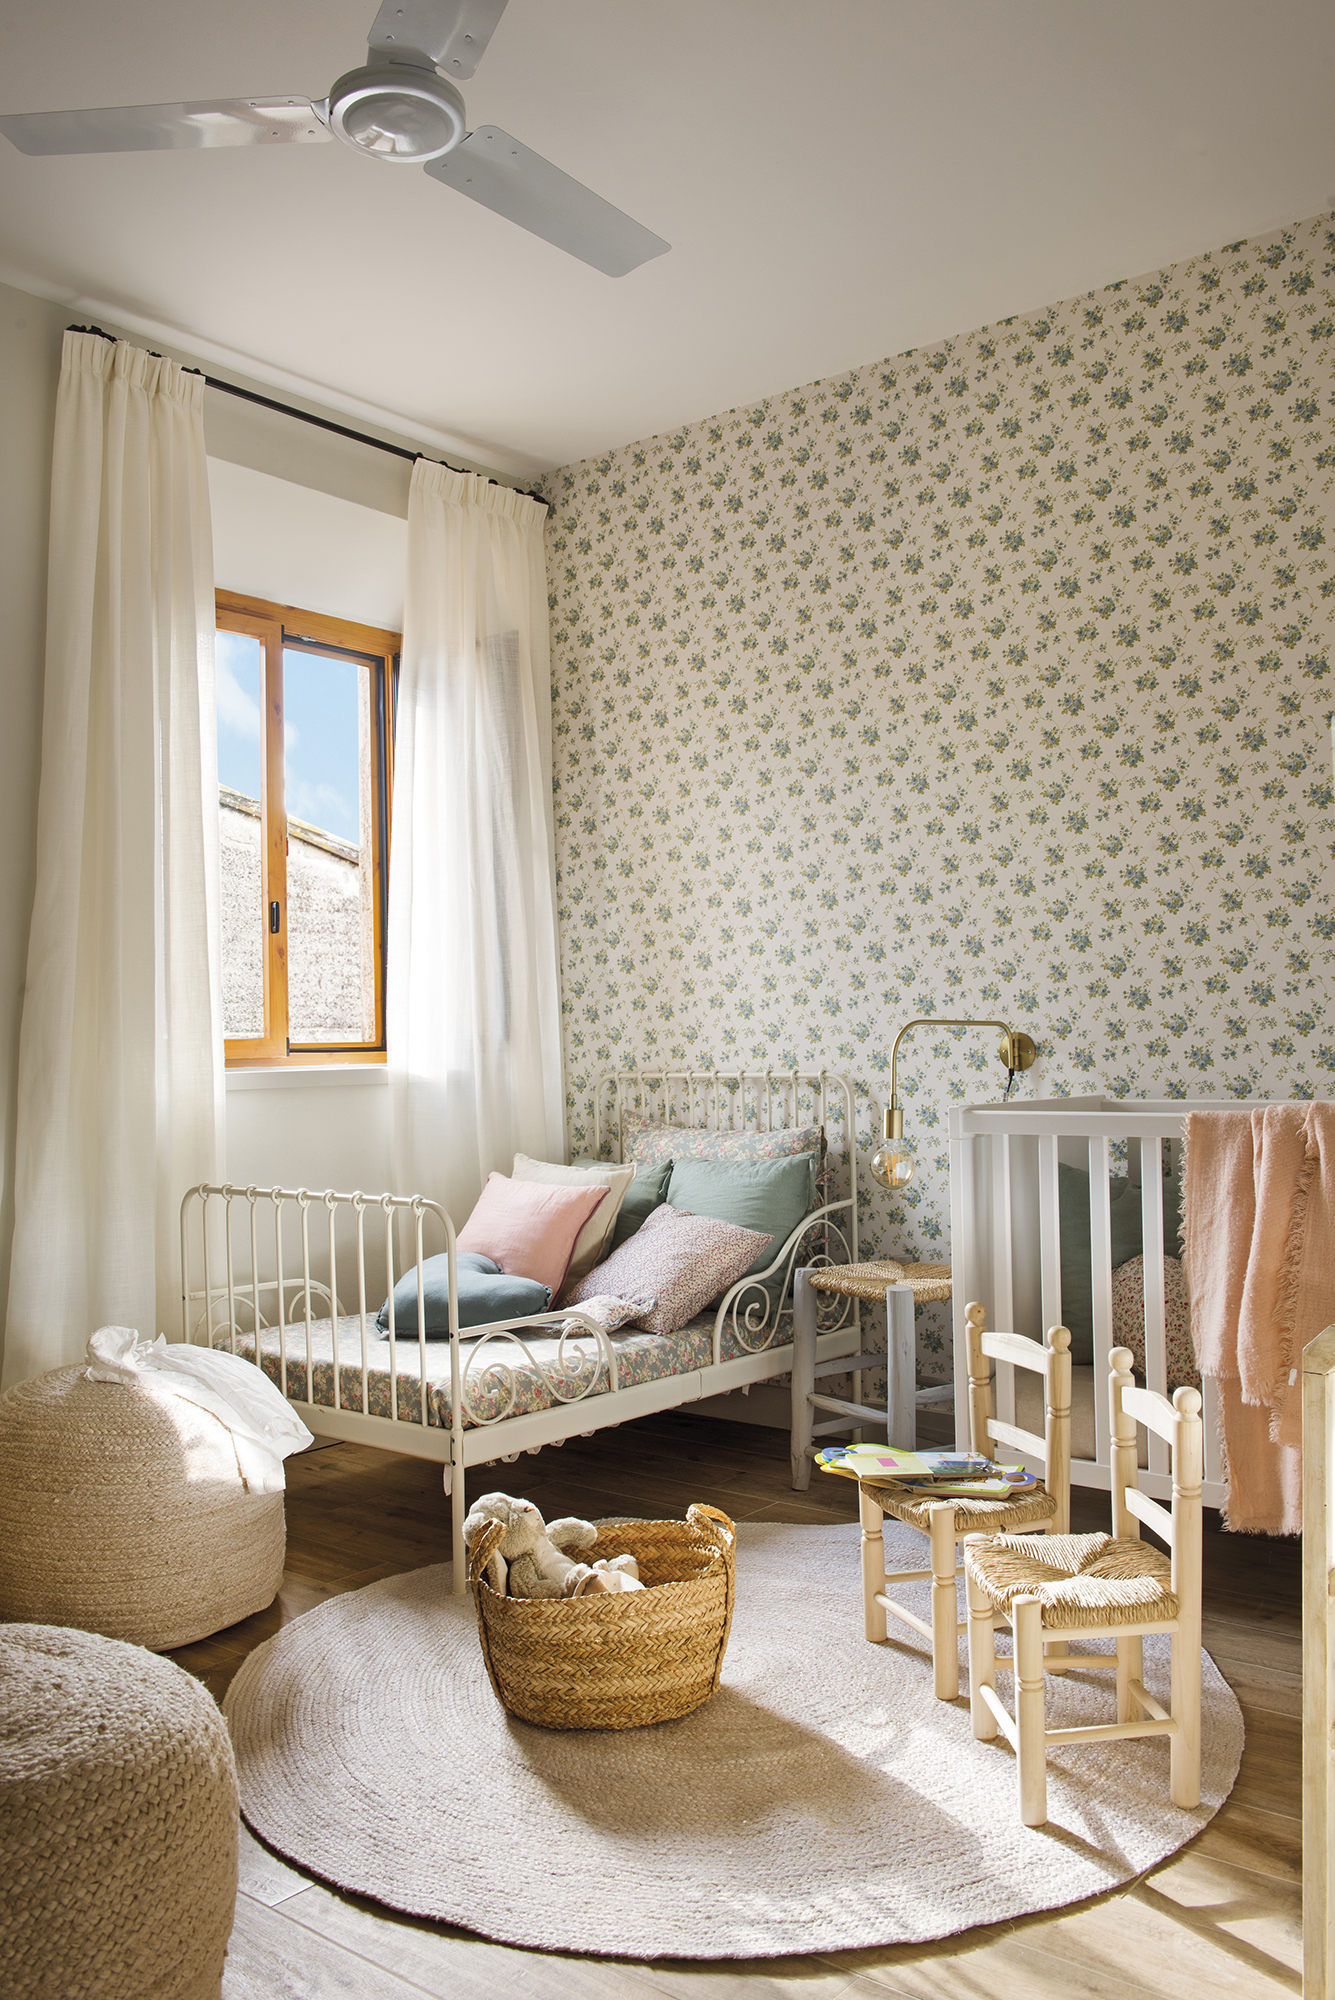 Dormitorio infantil con papel pintado de motivos florales pequeños y camas de forja blanca. 